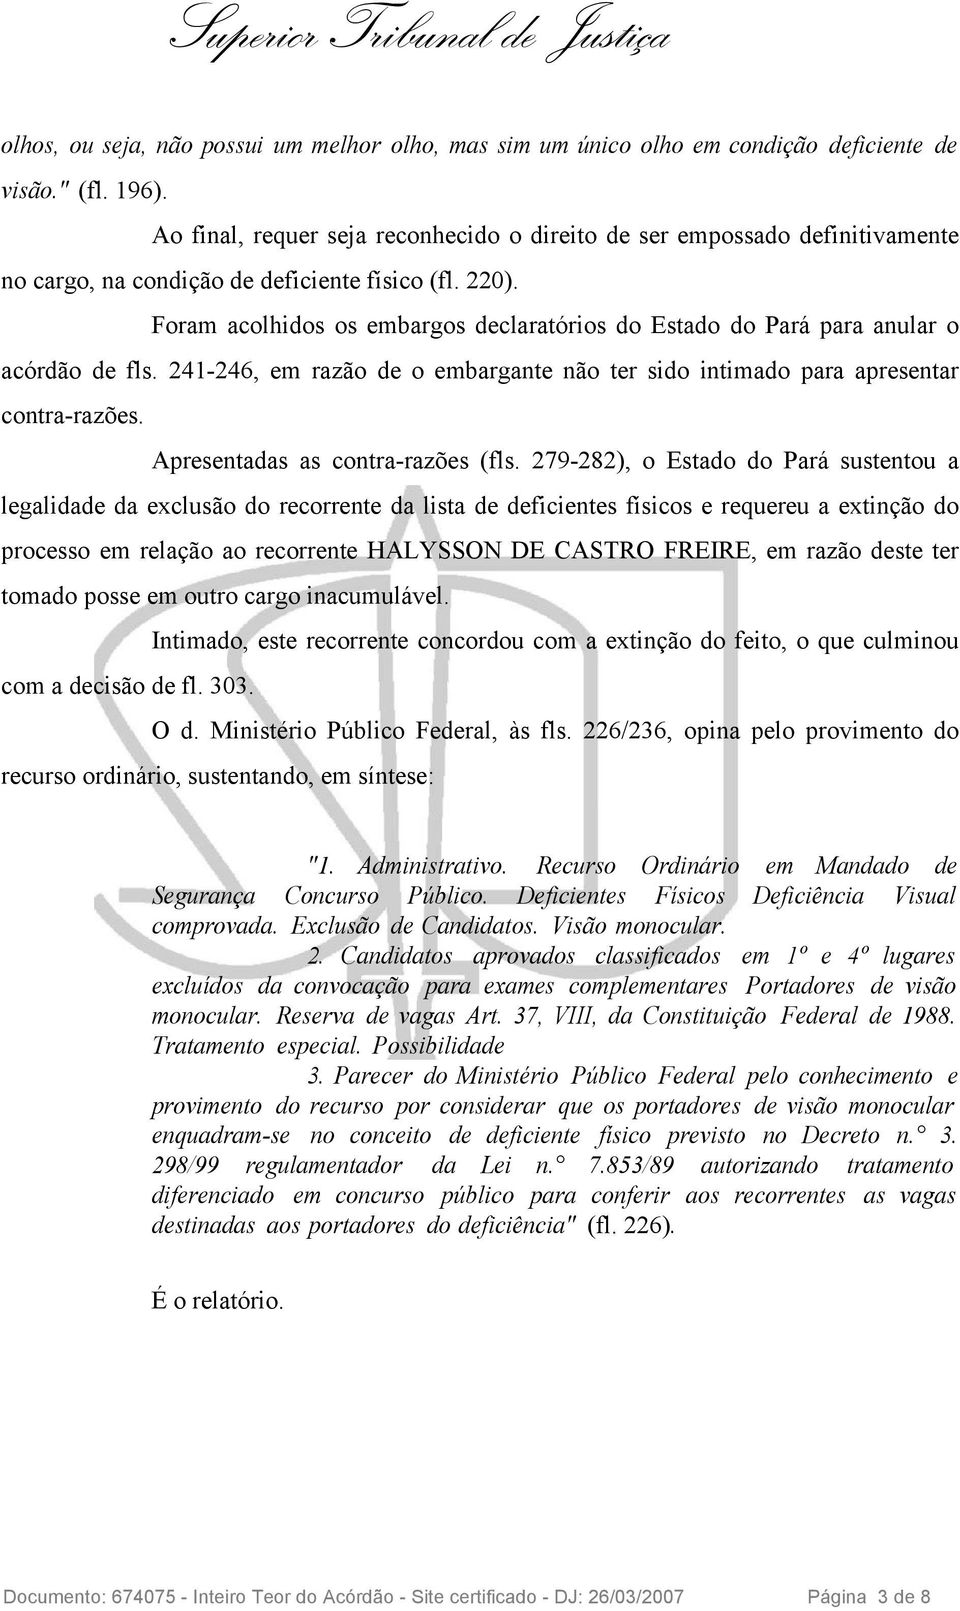 Foram acolhidos os embargos declaratórios do Estado do Pará para anular o acórdão de fls. 241-246, em razão de o embargante não ter sido intimado para apresentar contra-razões.